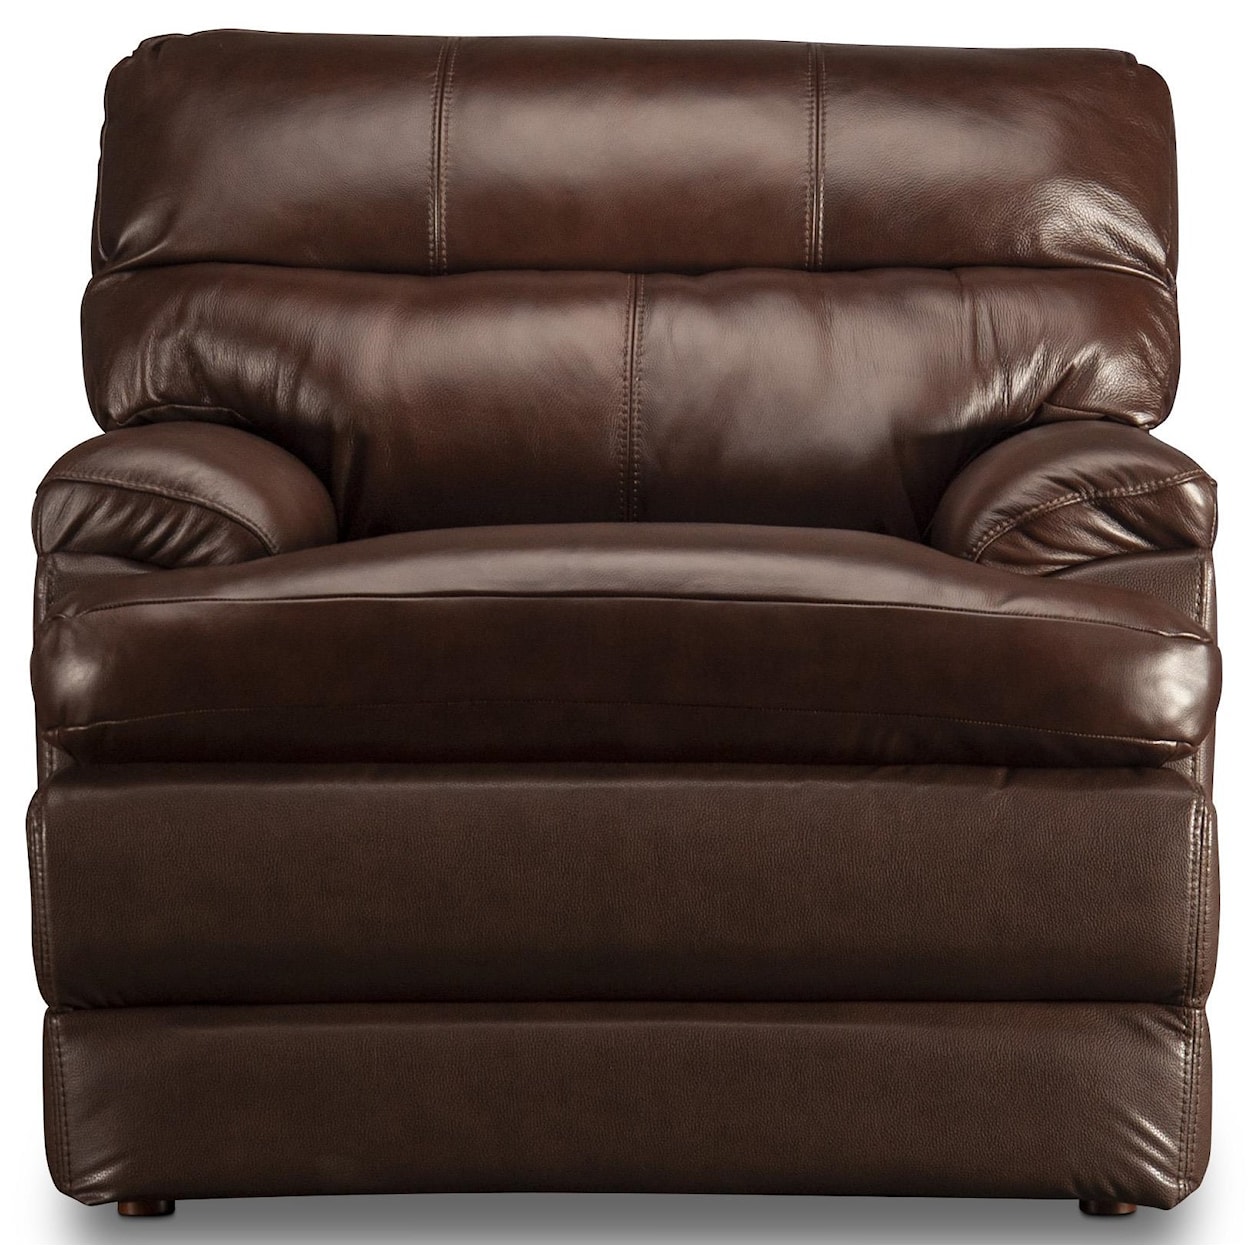 La-Z-Boy Miles Miles Top Grain Leather Match Chair